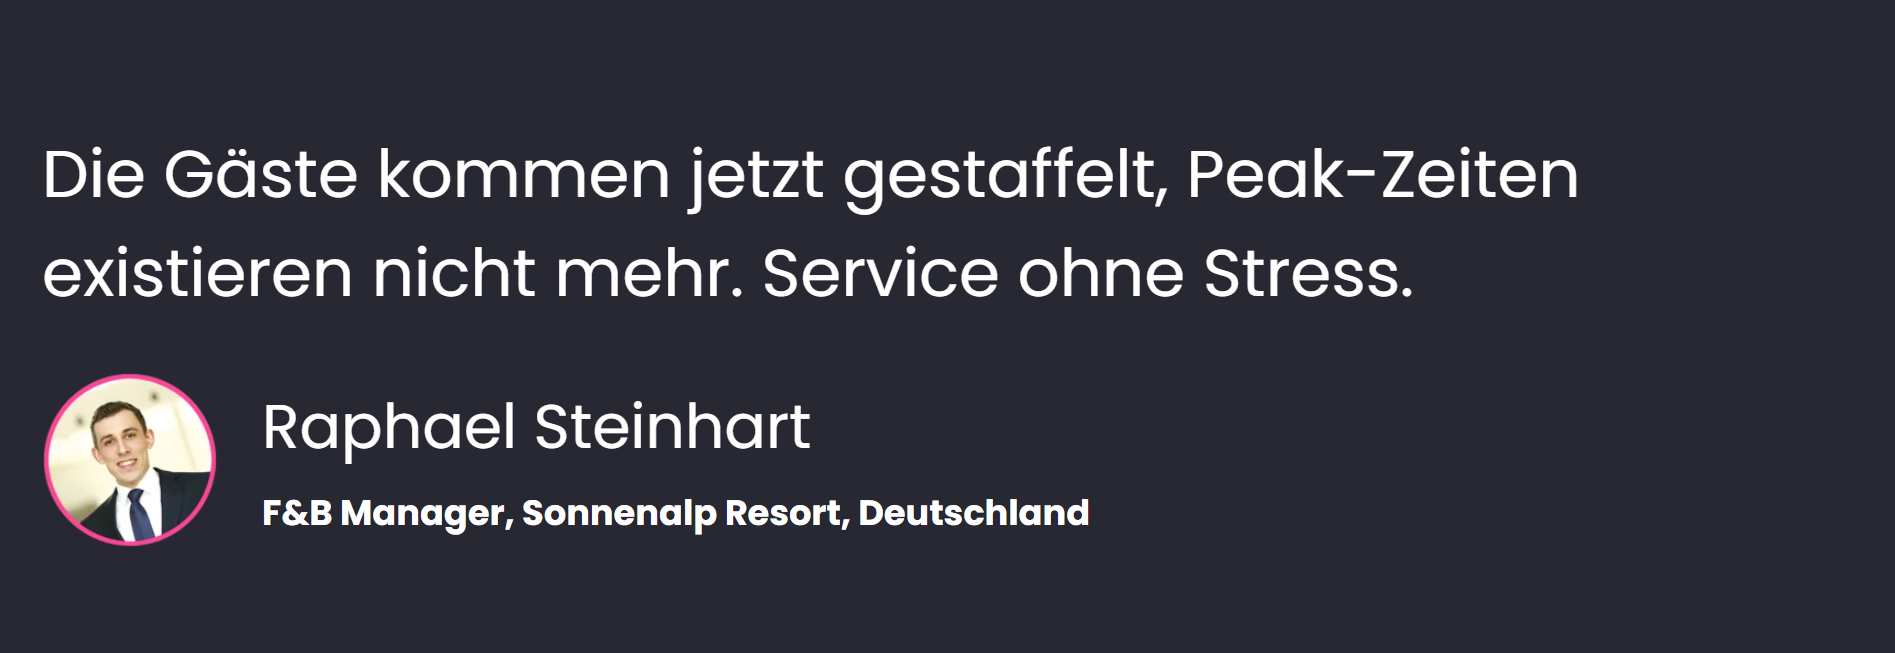 «Die Gäste kommen jetzt gestaffelt, Peak-Zeiten existieren nicht mehr. Service ohne Stress», sagt PRaphael Steinhart, F&B-Manager, Sonnenalp Resort, Deutschland.